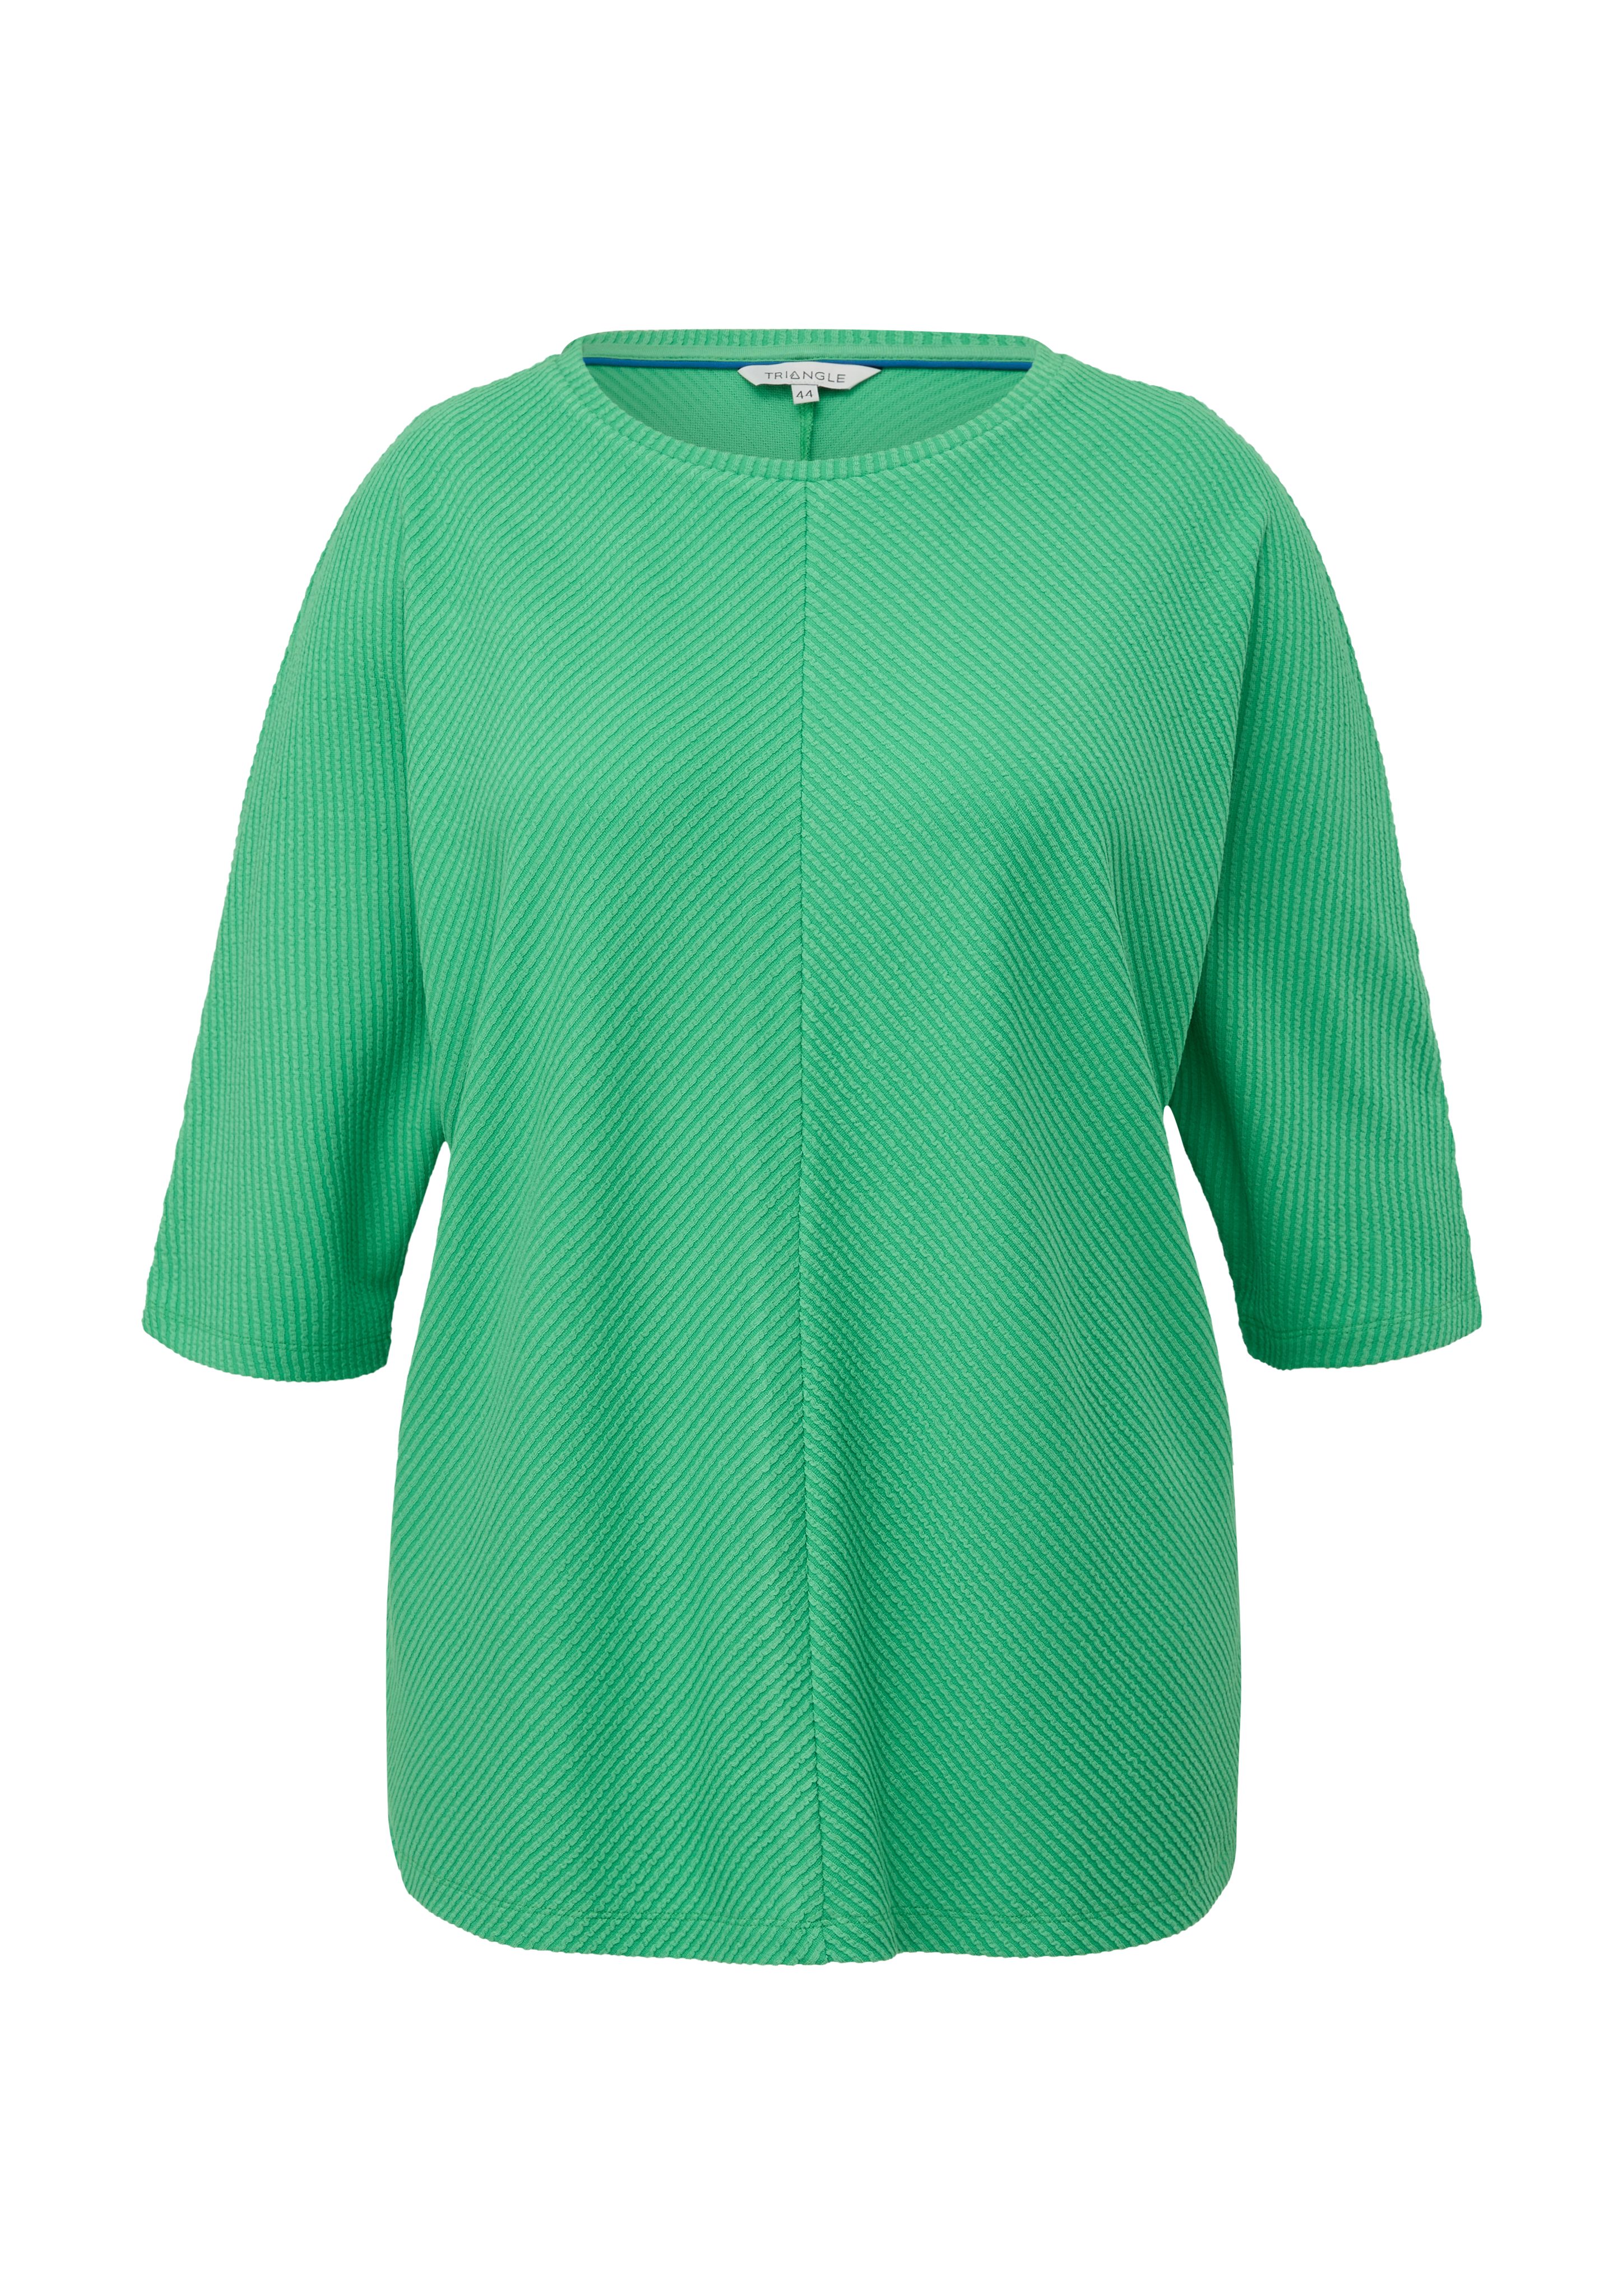 TRIANGLE Fledermausärmeln grün mit Shirt 3/4-Arm-Shirt